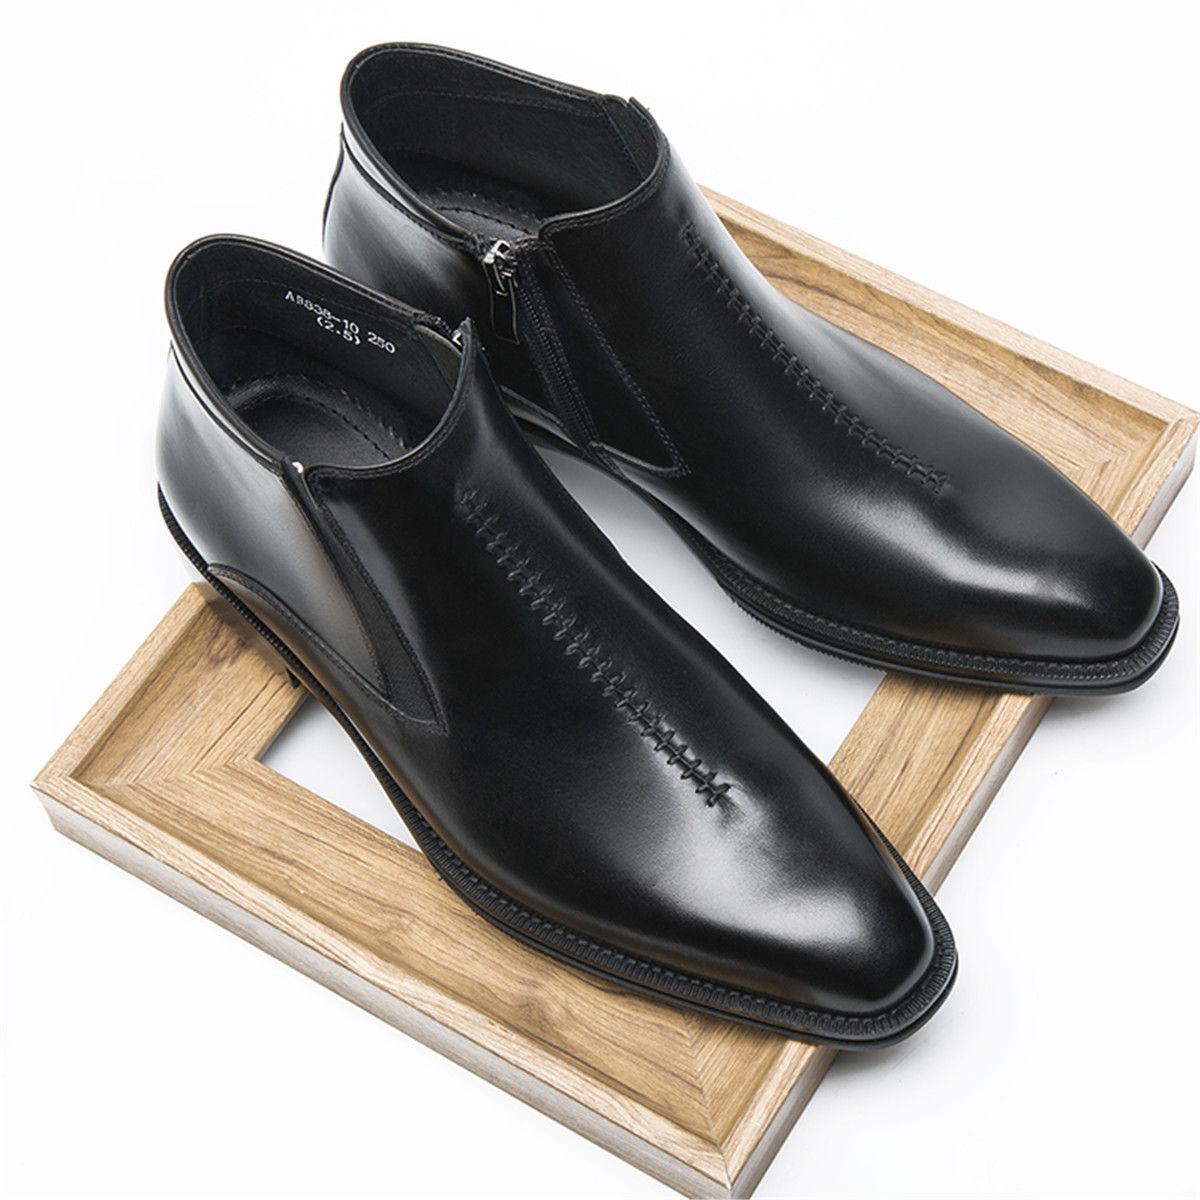 Moda Negro / Tan Botines Hombre Zapatos de invierno Botas de cuero genuino Botas de